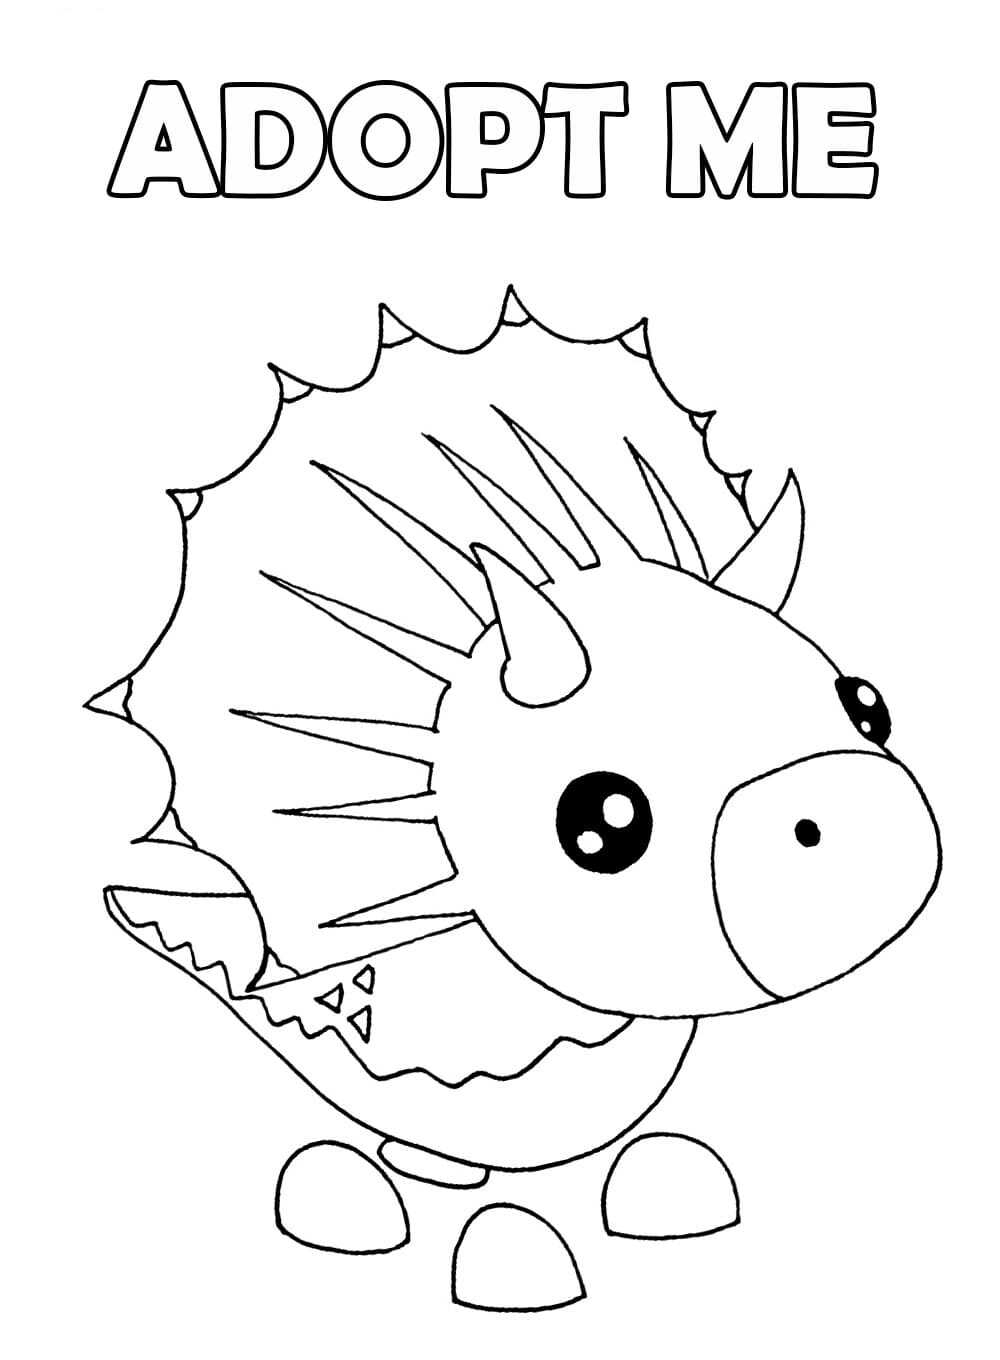 El Triceratops presenta una mascota dinosaurio con tres cuernos blancos en la cabeza y el hocico en los videojuegos Adopt me de Adopt me.